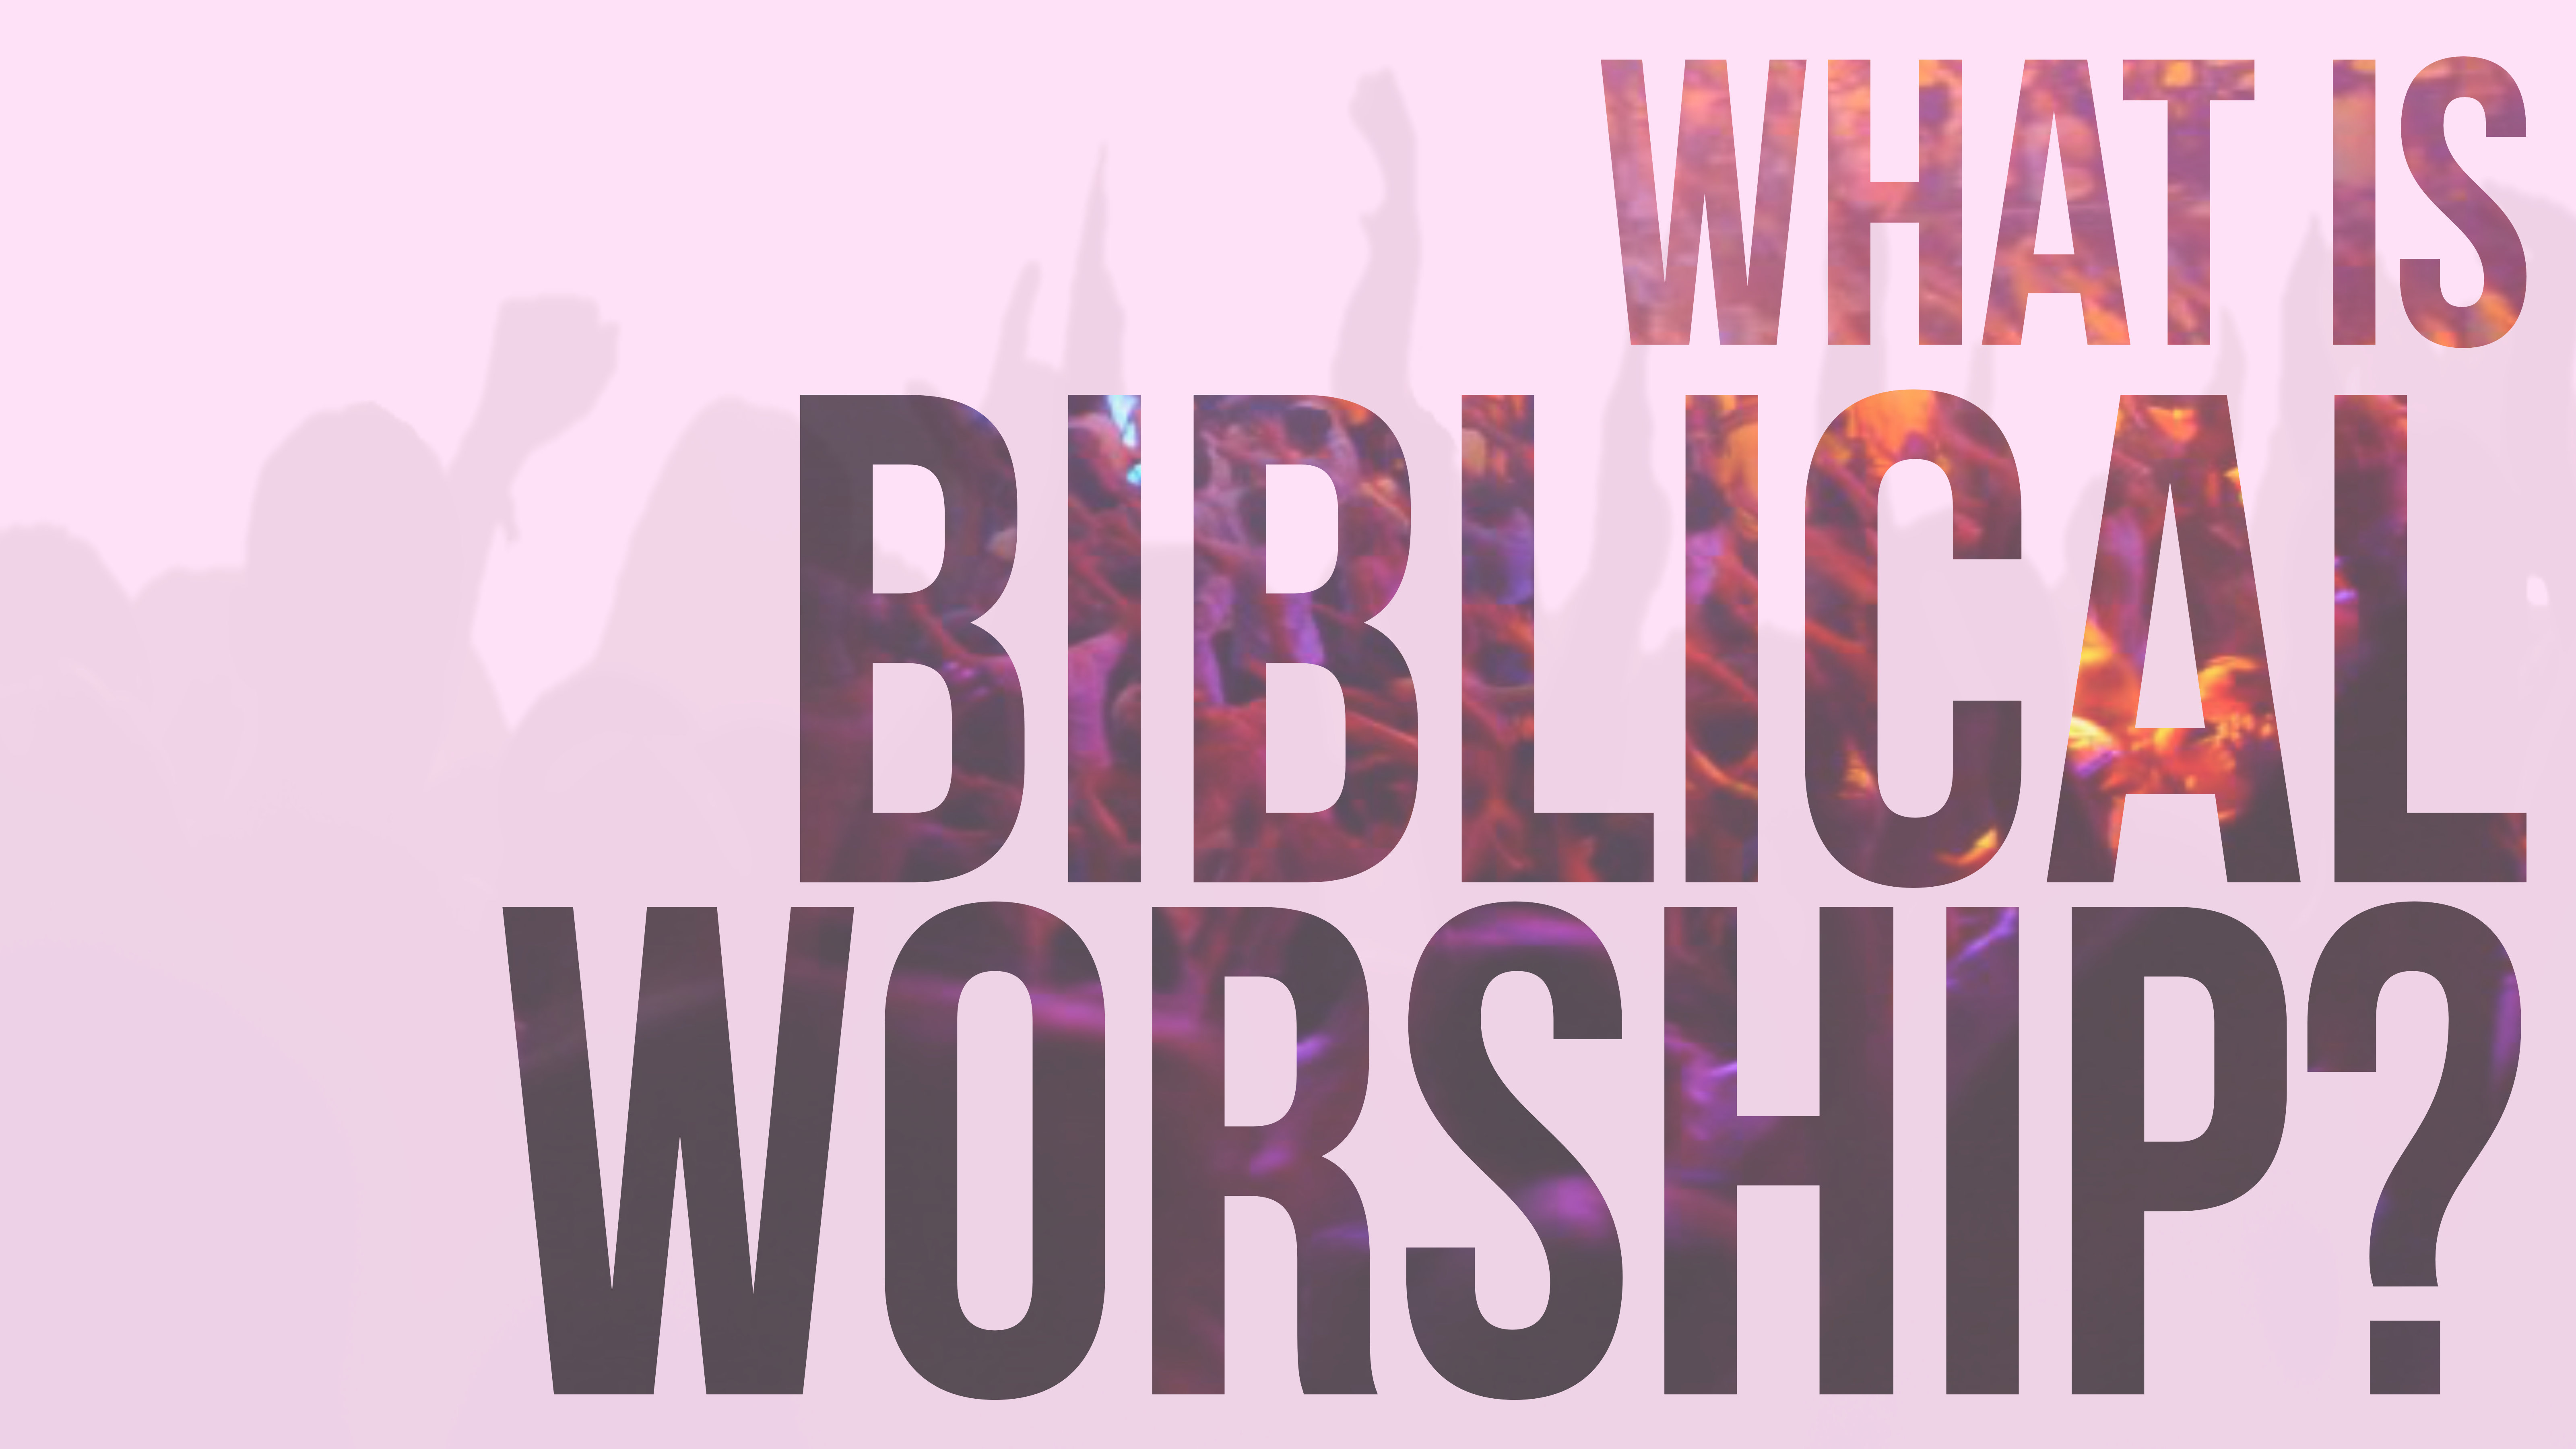 Biblical Worship